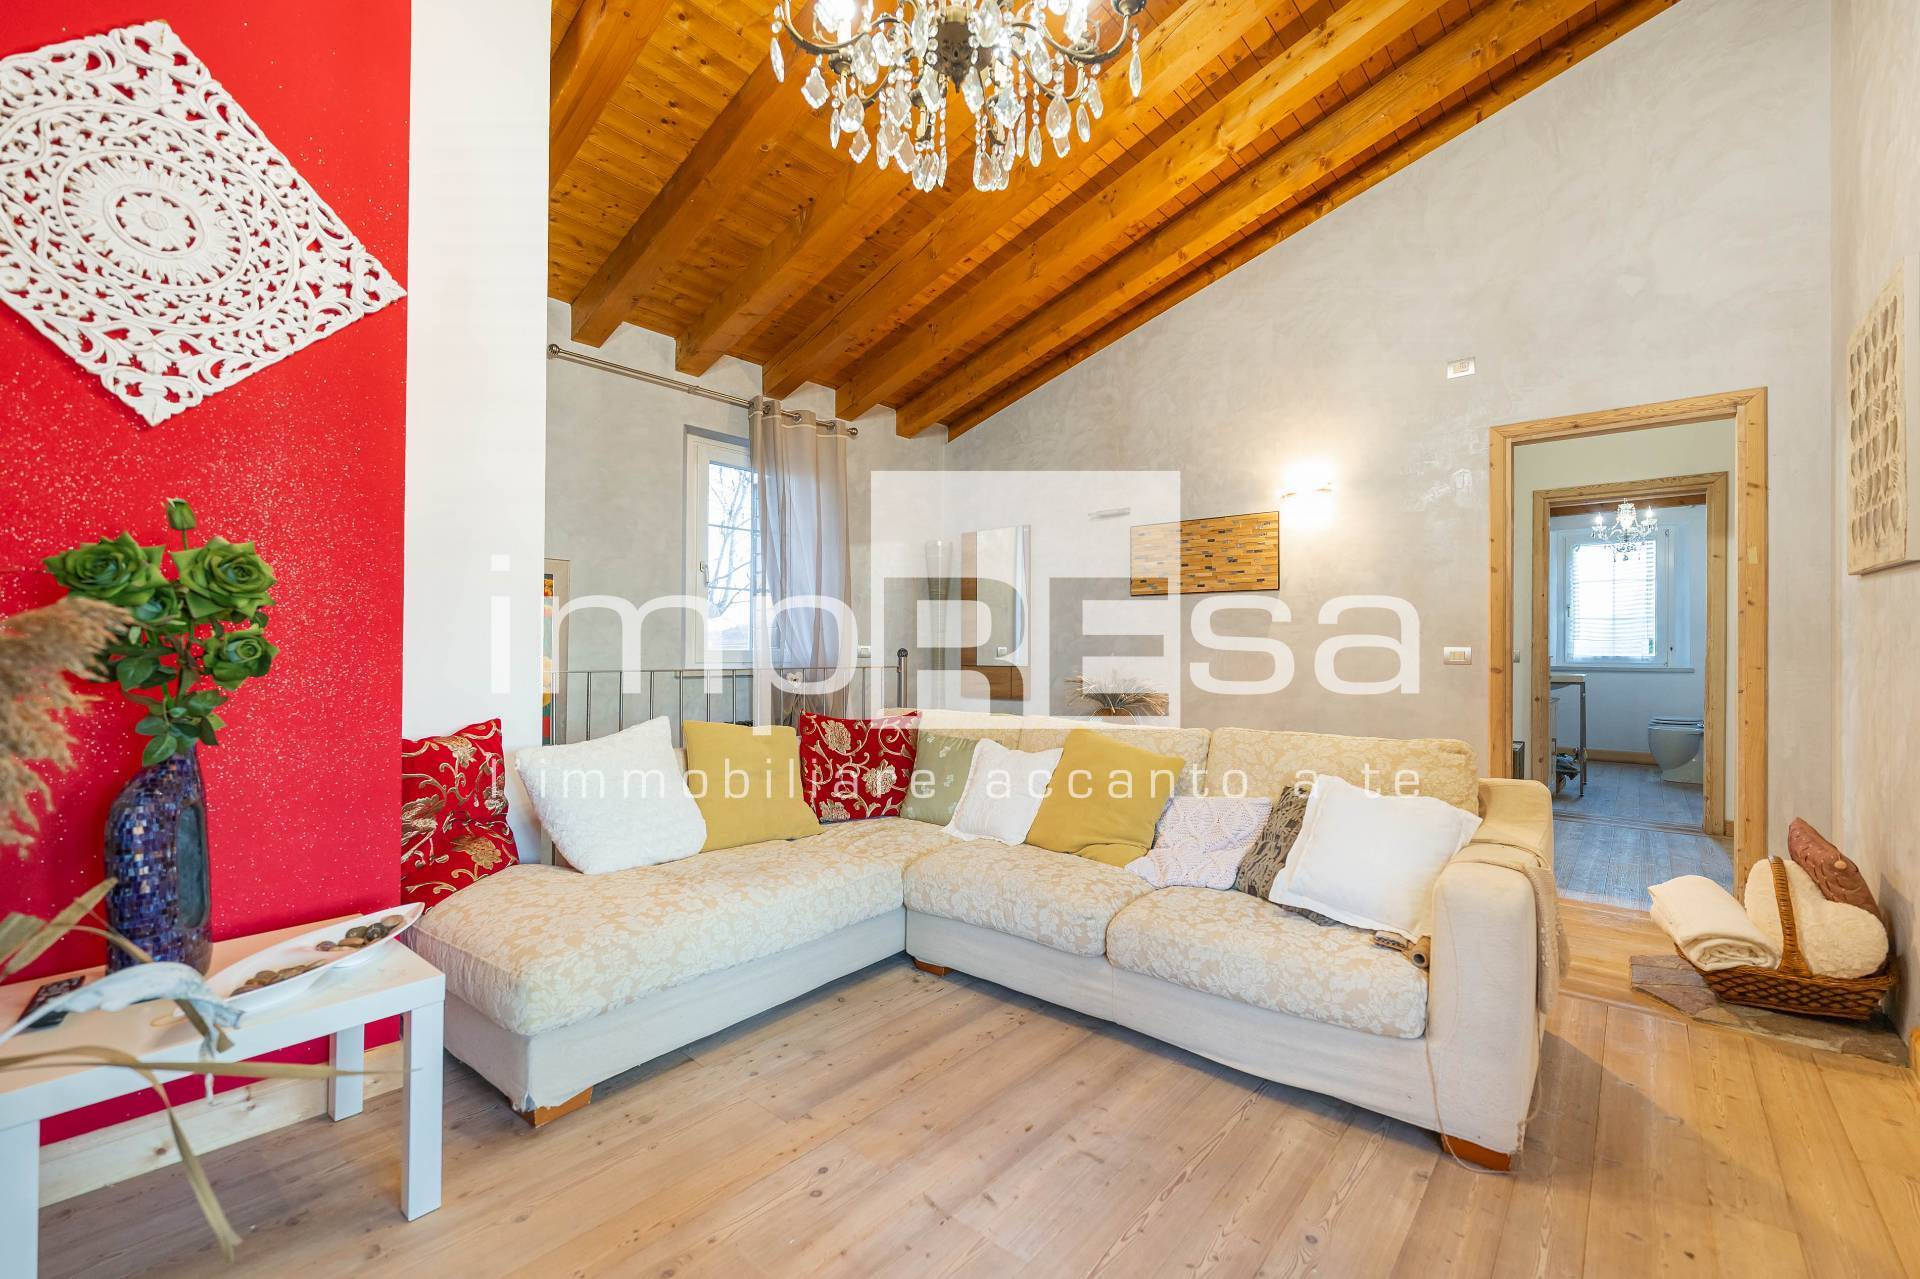 Villa Bifamiliare in vendita a Concordia Sagittaria, 7 locali, prezzo € 239.000 | PortaleAgenzieImmobiliari.it